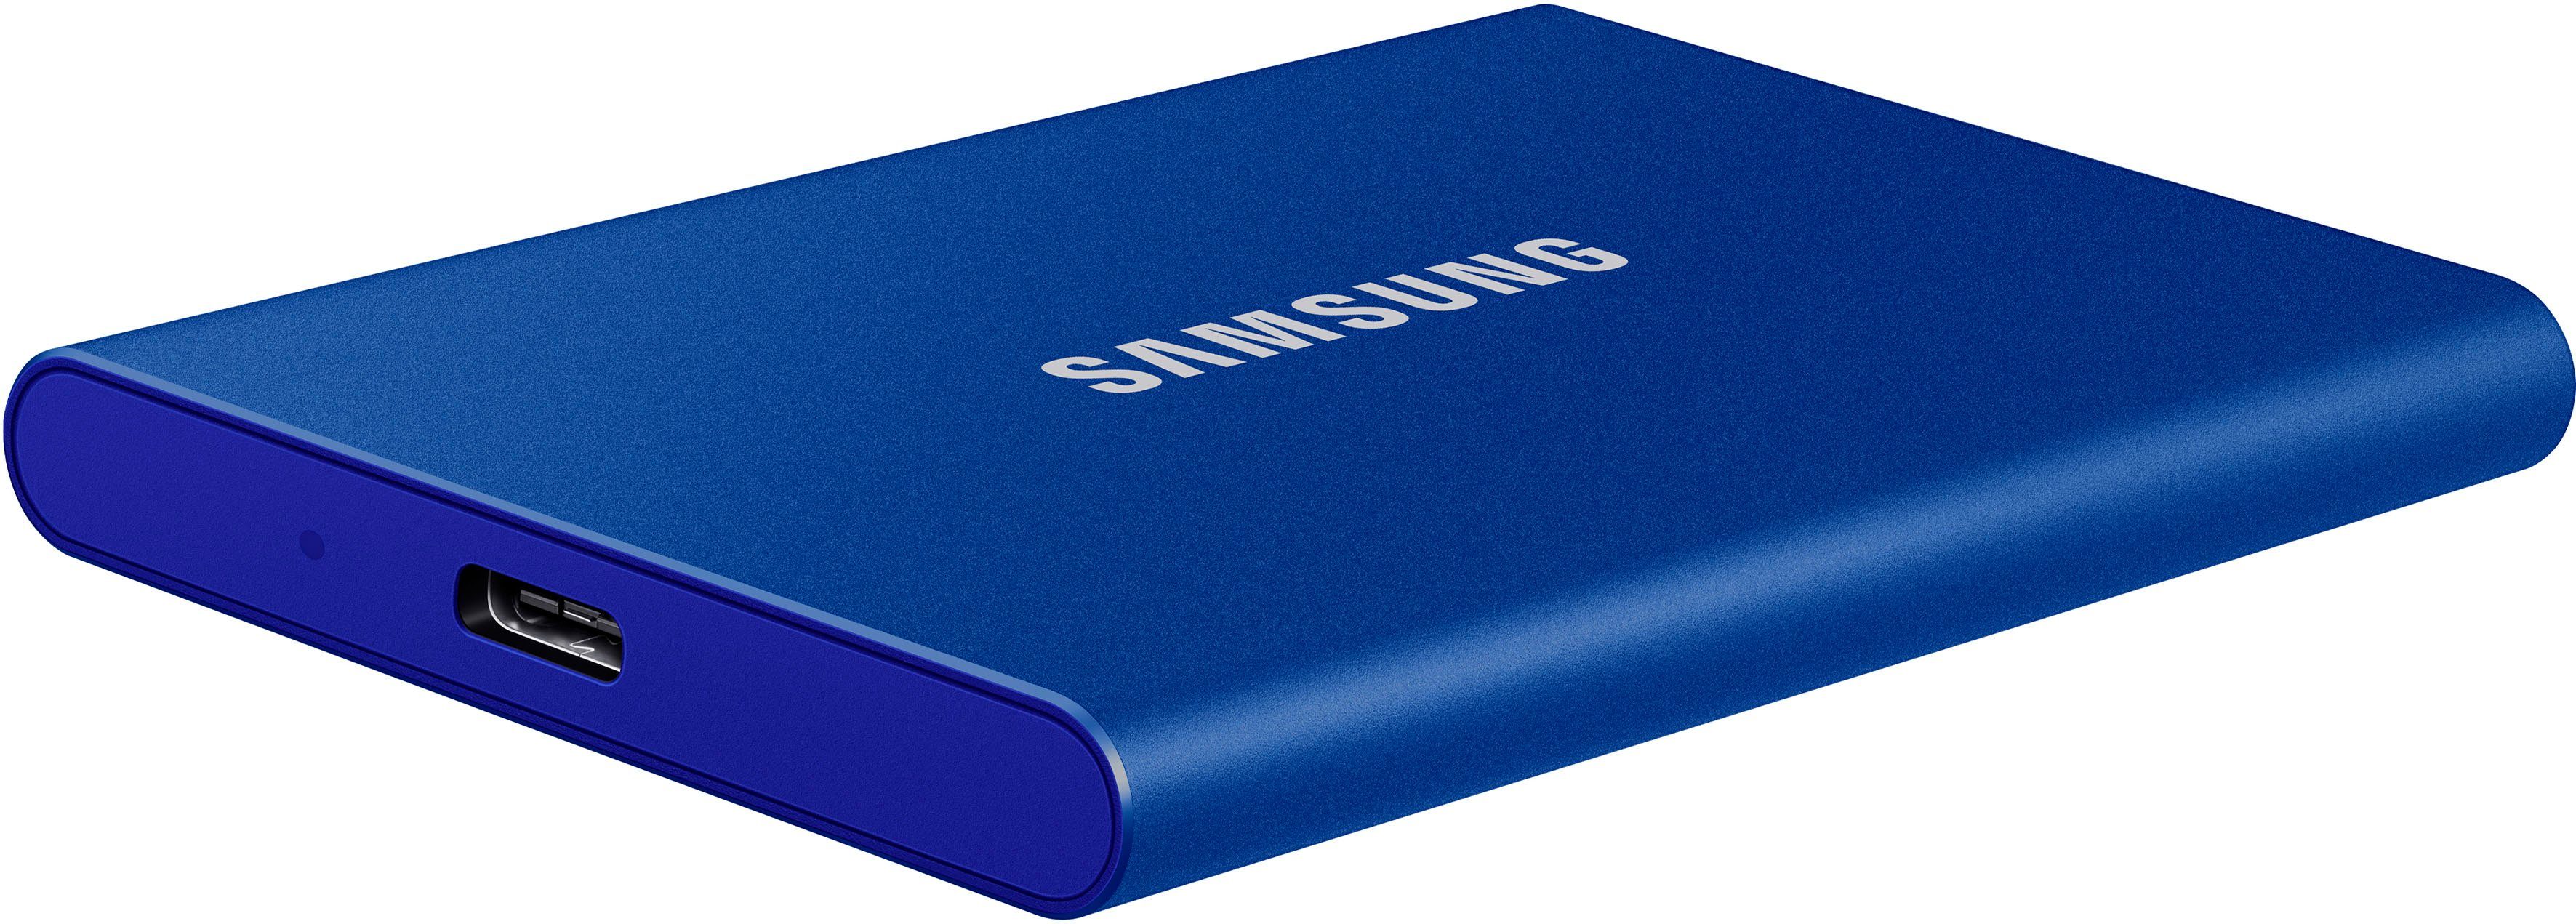 Samsung Portable SSD T7 externe SSD (500 GB) 1050 MB/S Lesegeschwindigkeit,  1000 MB/S Schreibgeschwindigkeit